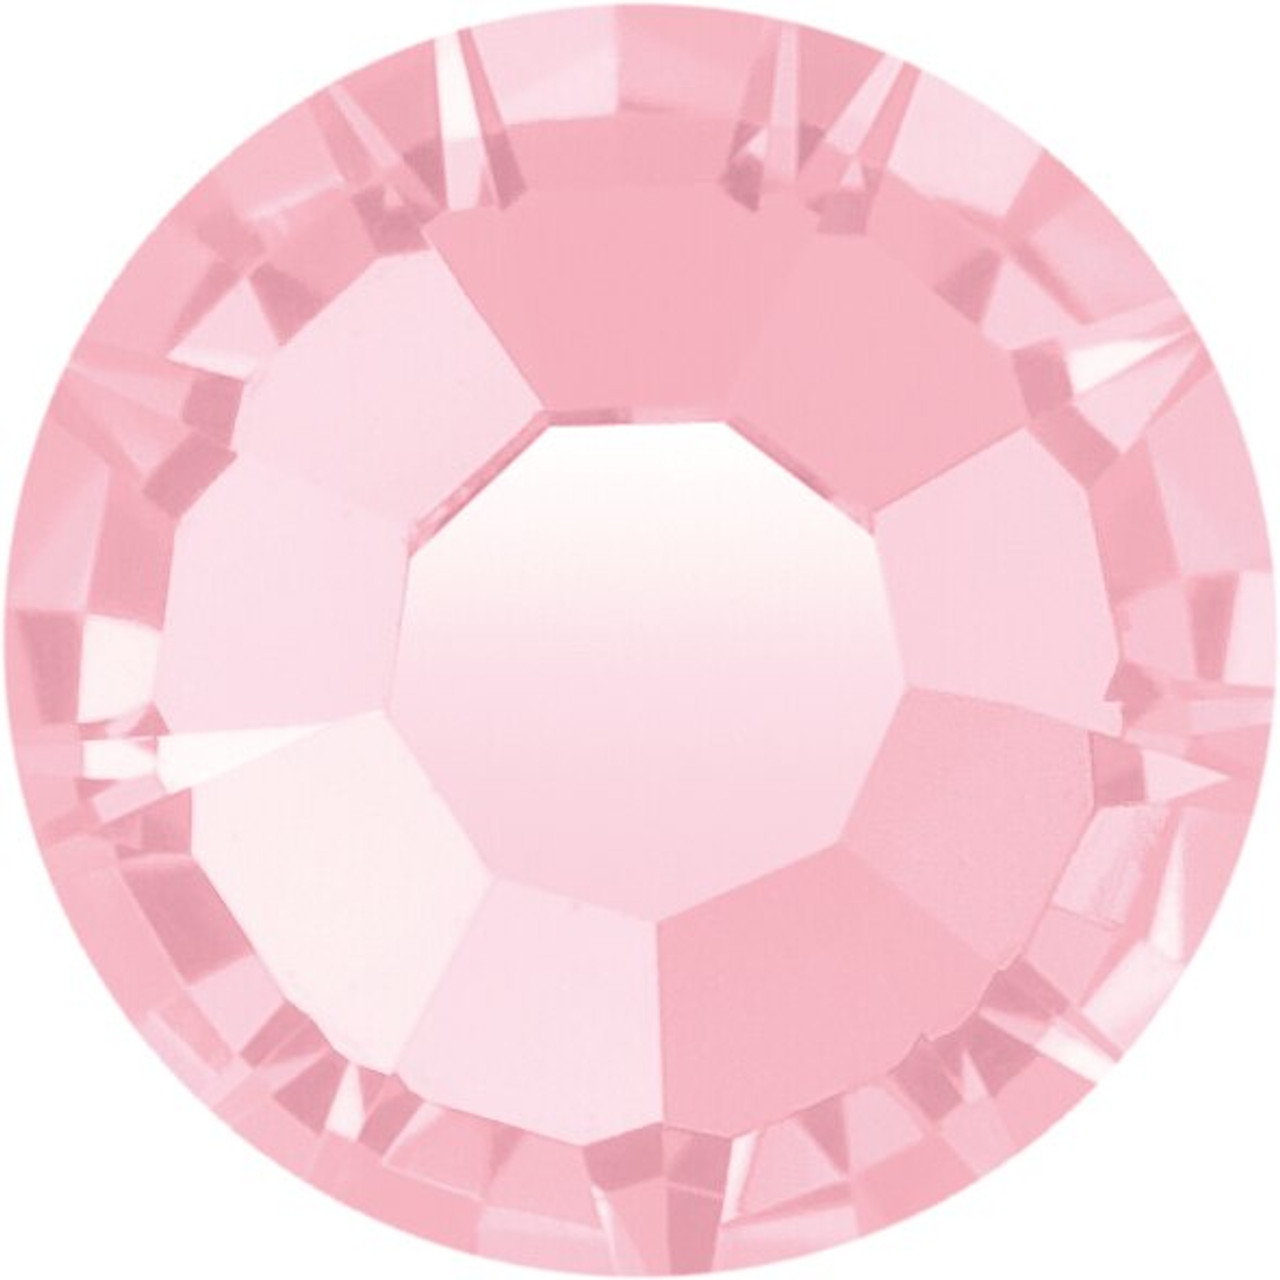 MAXIMA Crystals by Preciosa Flatback Rhinestones Crystal AB 05ss -  Rhinestones Unlimited